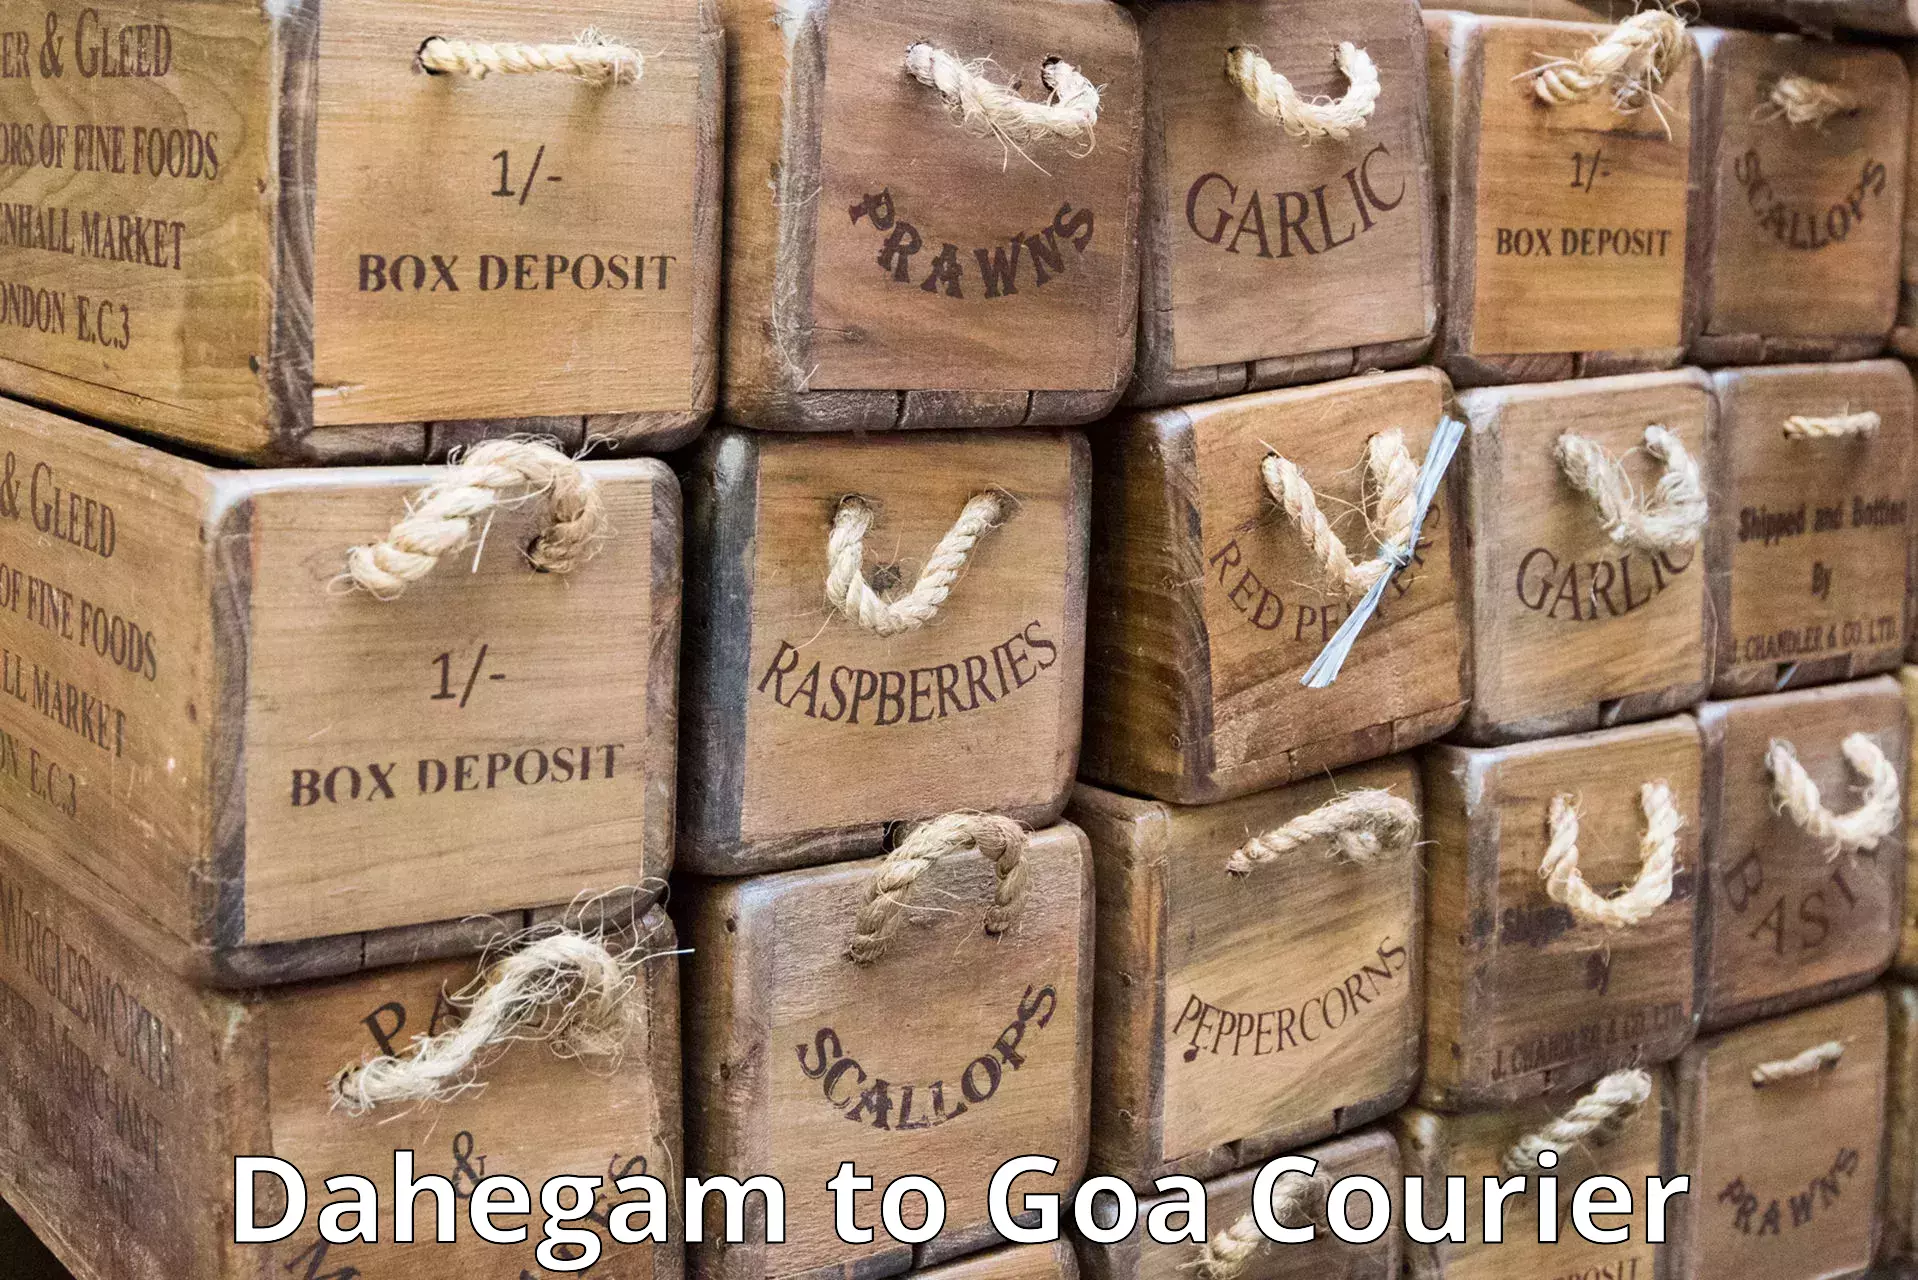 International courier networks Dahegam to Goa